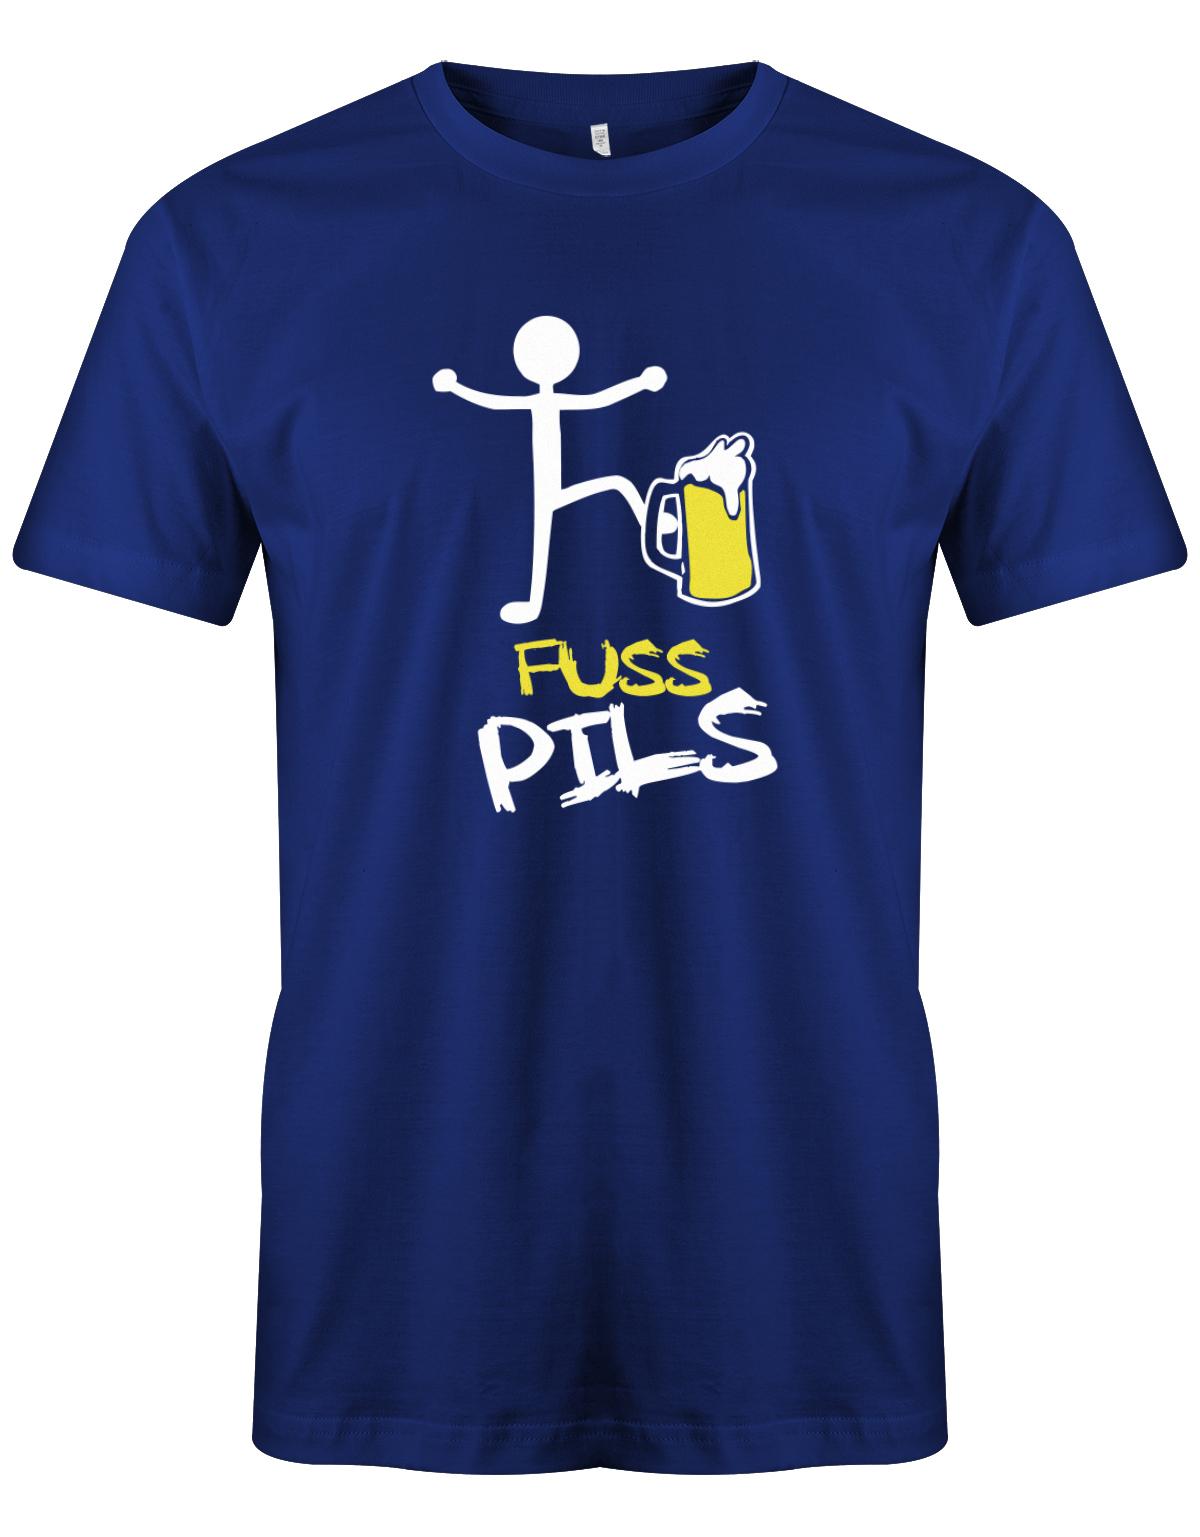 Fusspils-Bier-Herren-Shirt-Royalblau